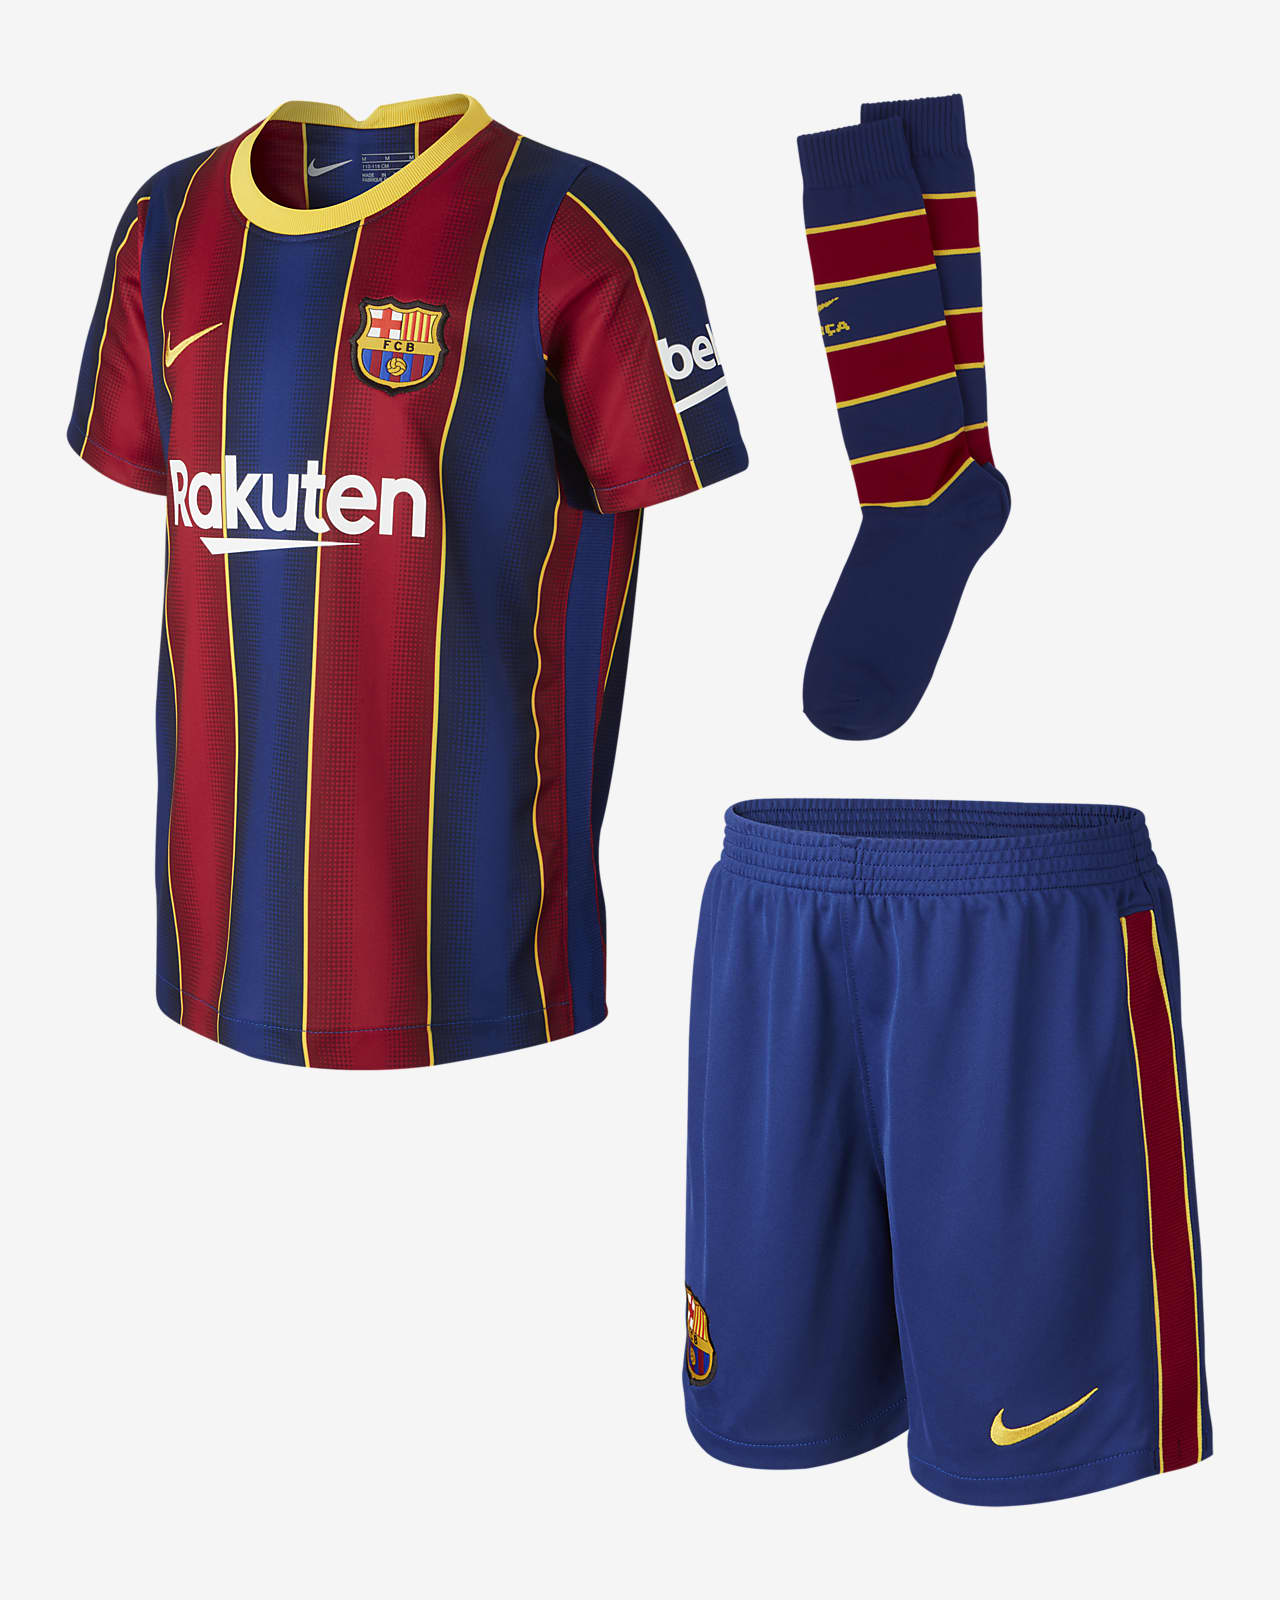 kit barcelona 2021 dream league soccer 2020